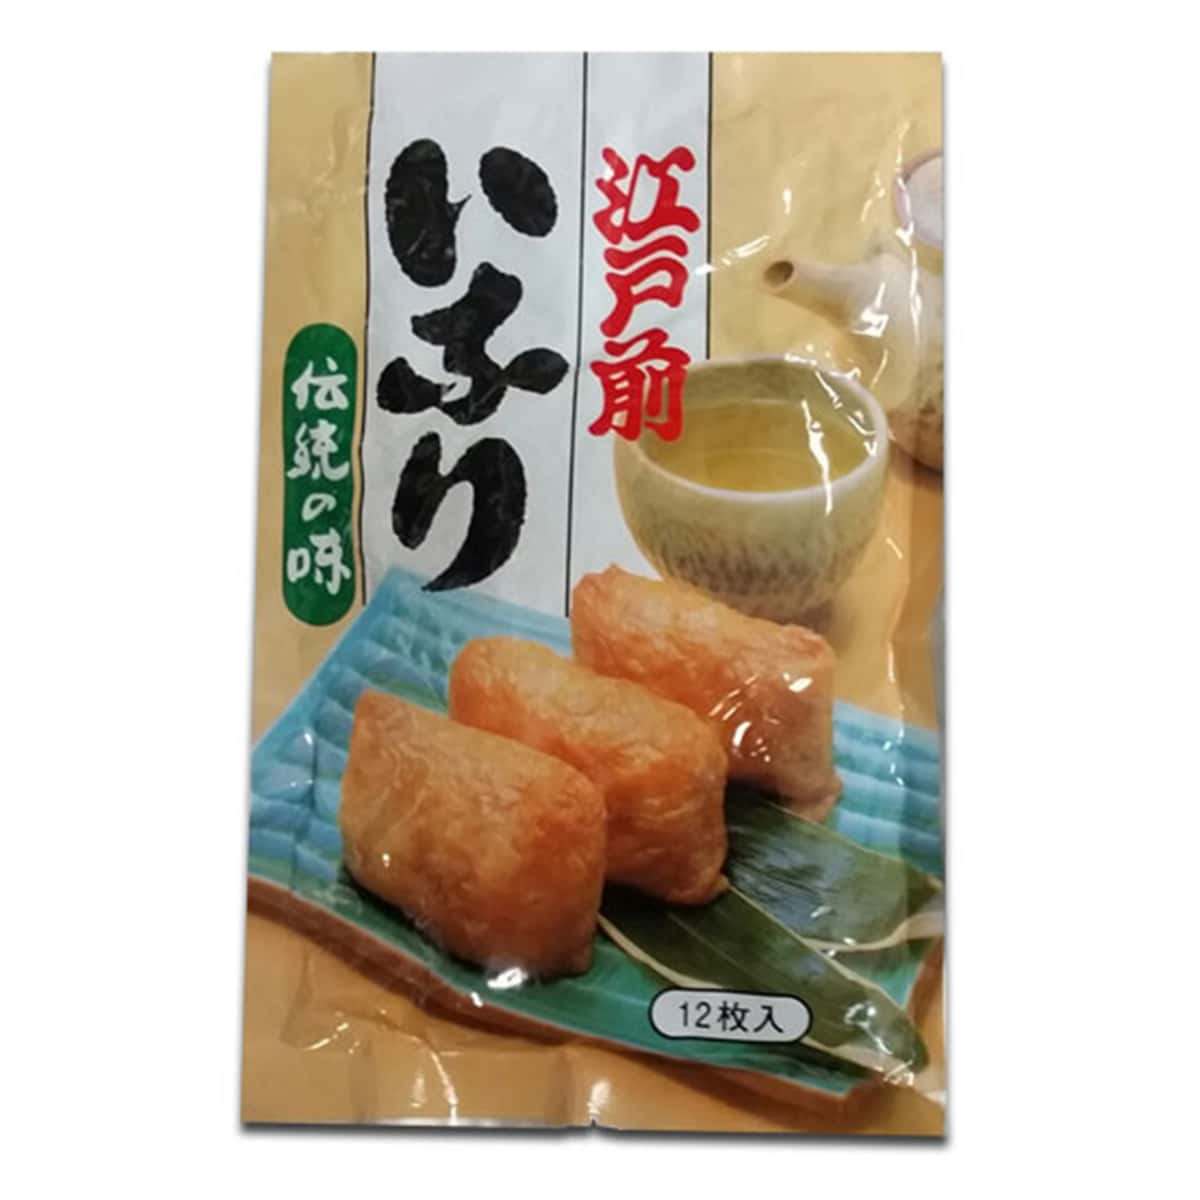 Inari Tofu Pockets (Fried Bean Curd Pouches) 12 Pcs - 250 gm